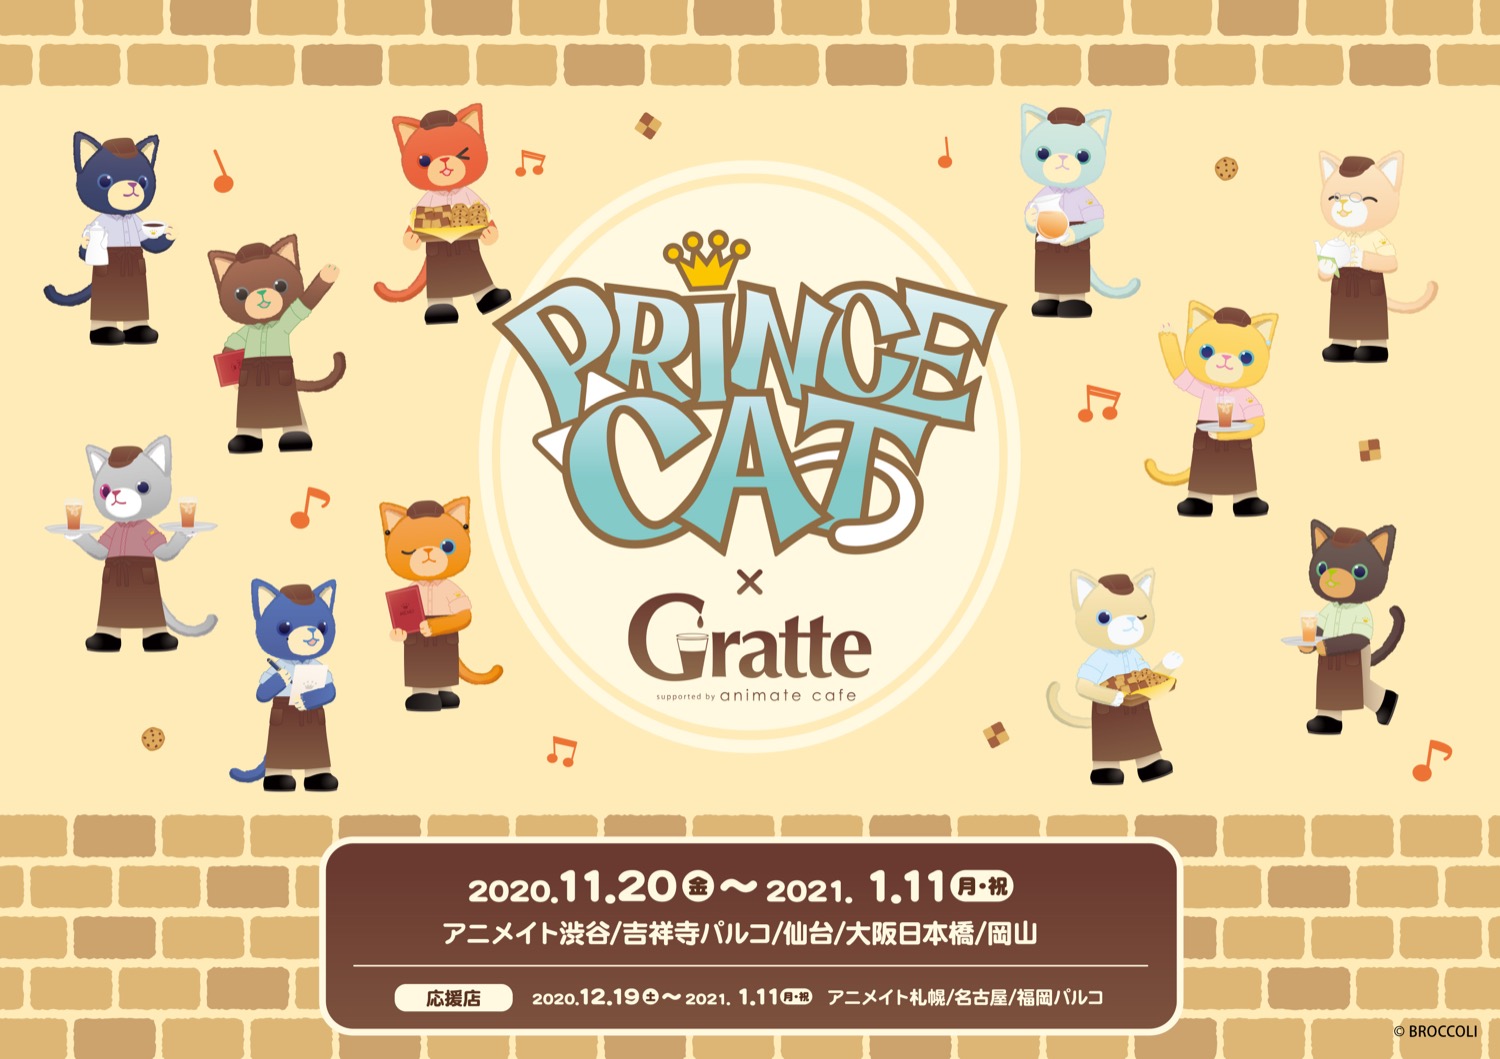 Prince Cat アニメイトカフェグラッテ5店舗 11 1 11 コラボ開催